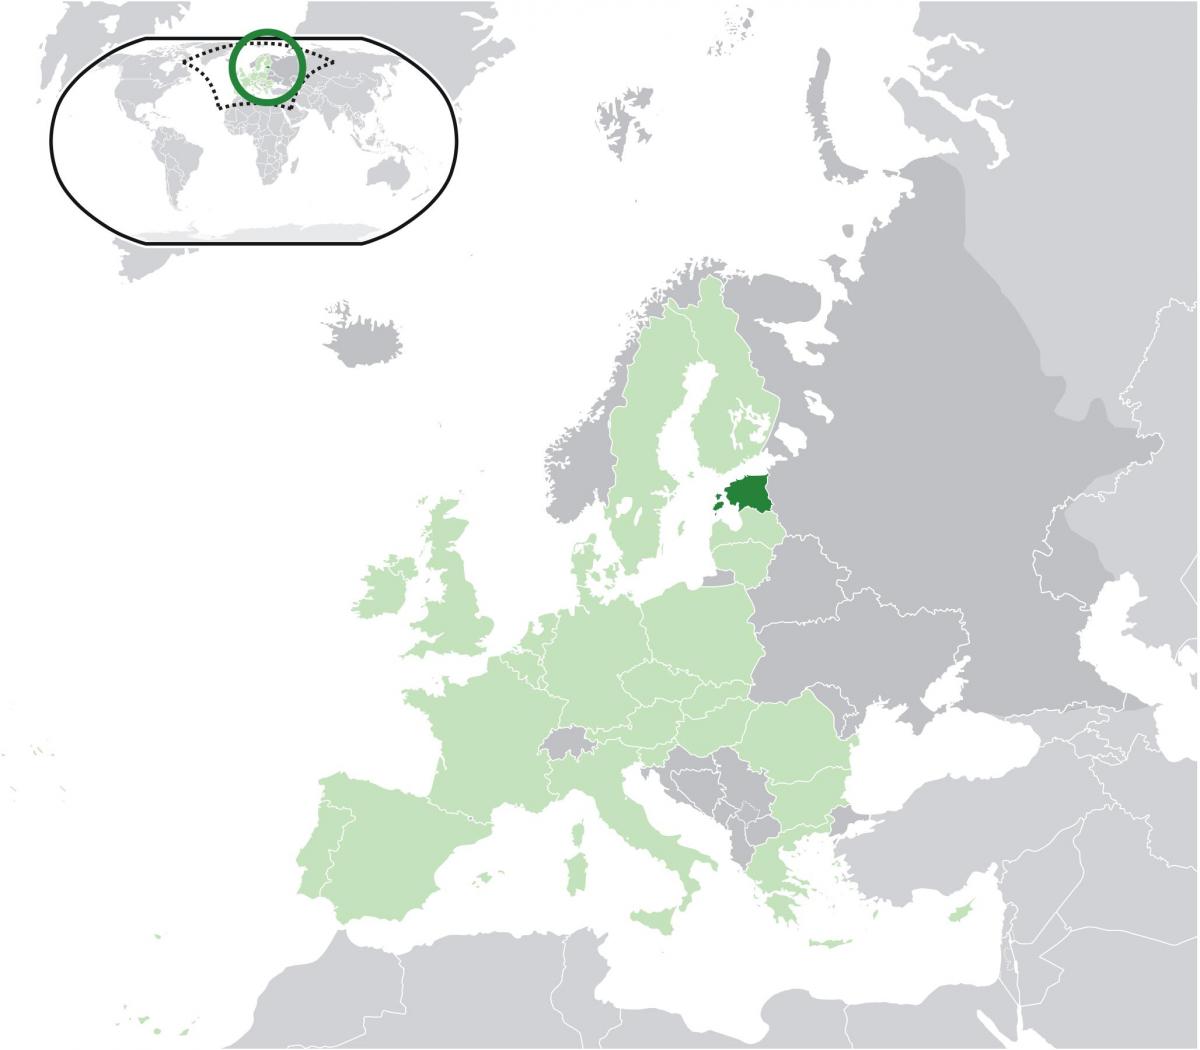 אסטוניה על המפה של אירופה.